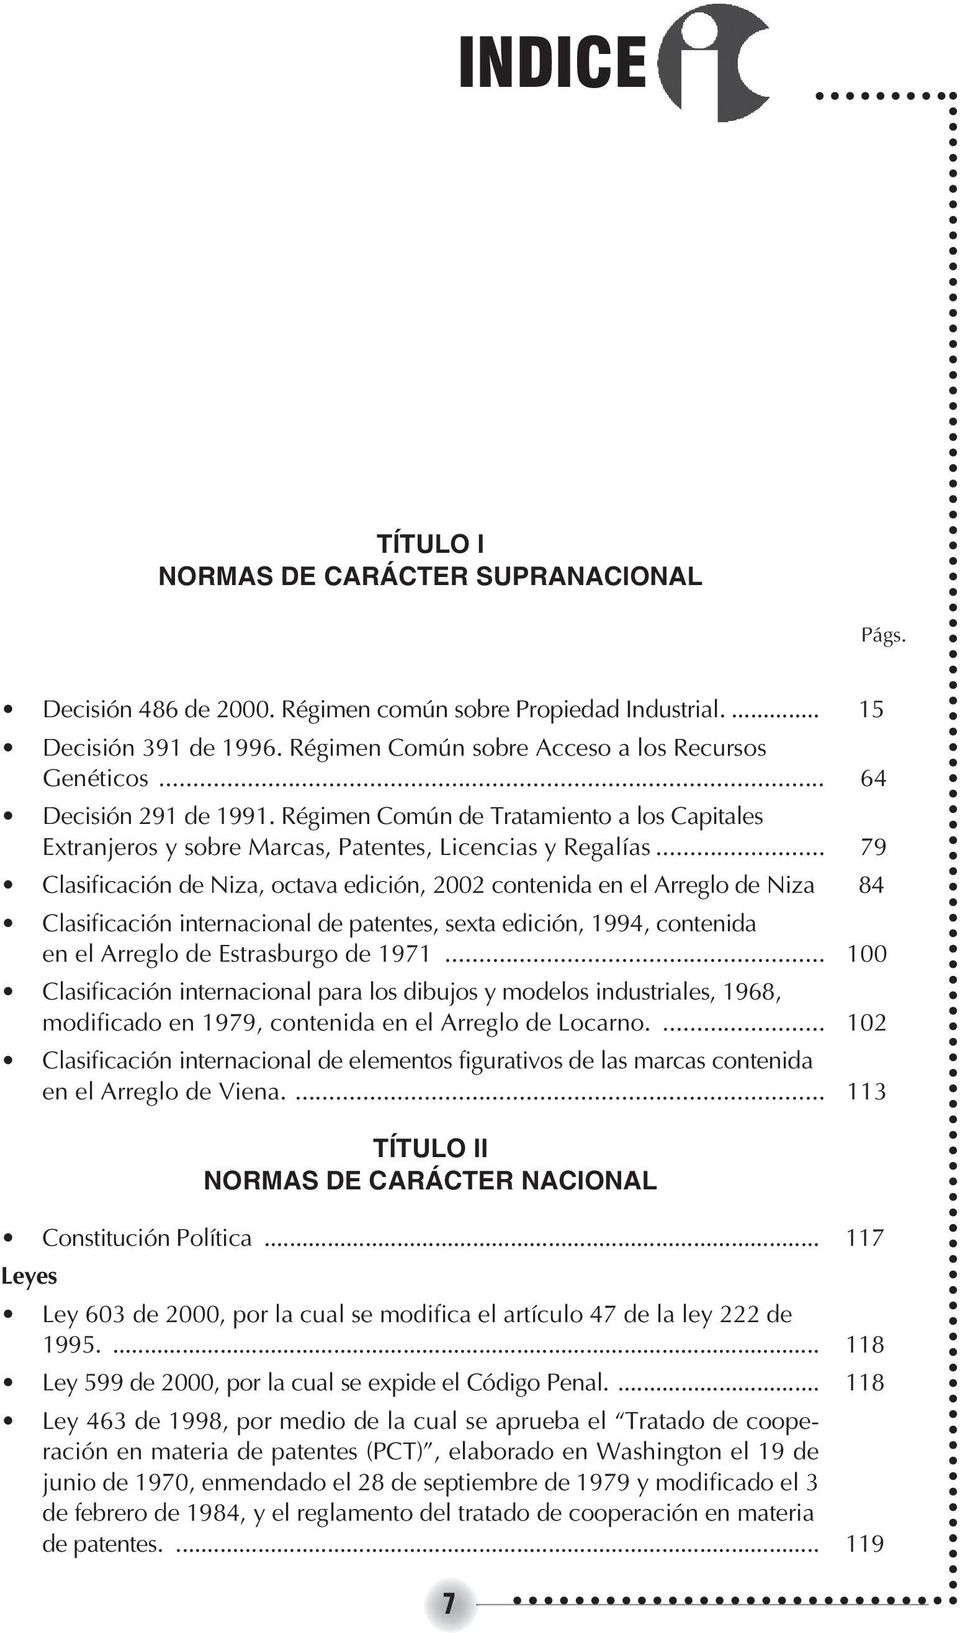 .. 79 Clasificación de Niza, octava edición, 2002 contenida en el Arreglo de Niza 84 Clasificación internacional de patentes, sexta edición, 1994, contenida en el Arreglo de Estrasburgo de 1971.